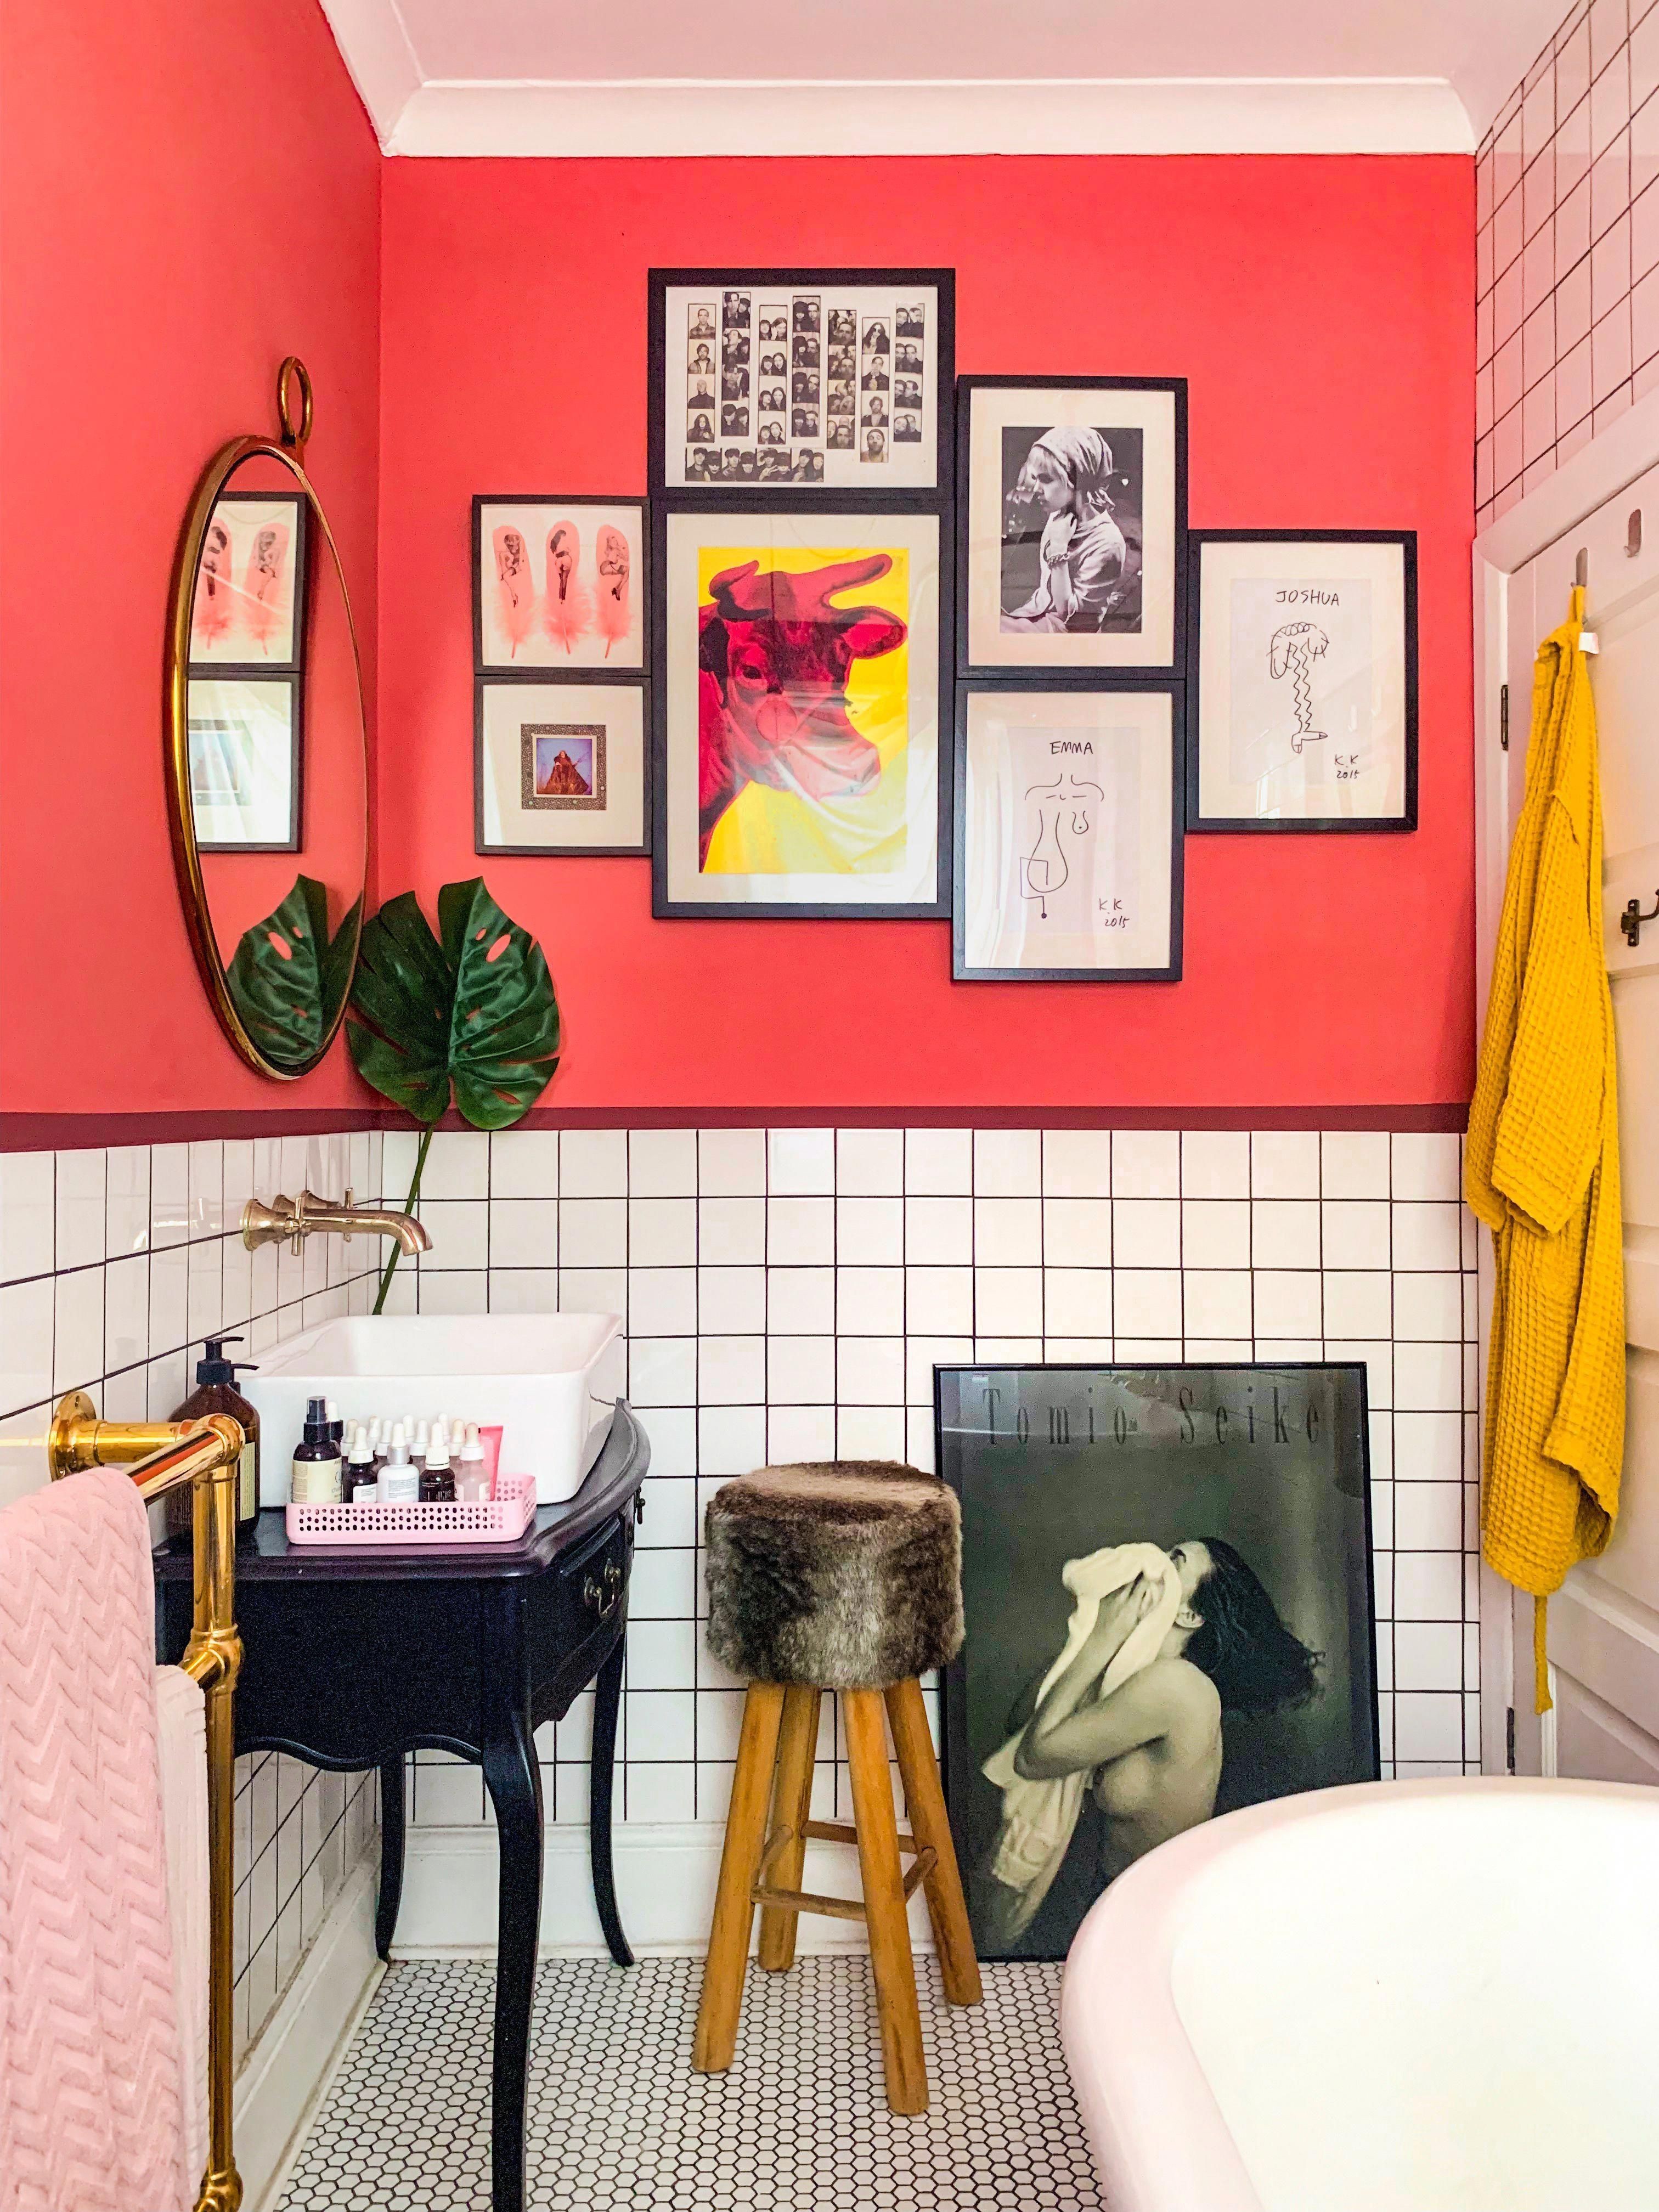 Décor do dia: banheiro com quadros e meia parede pintada  (Foto: Reprodução)